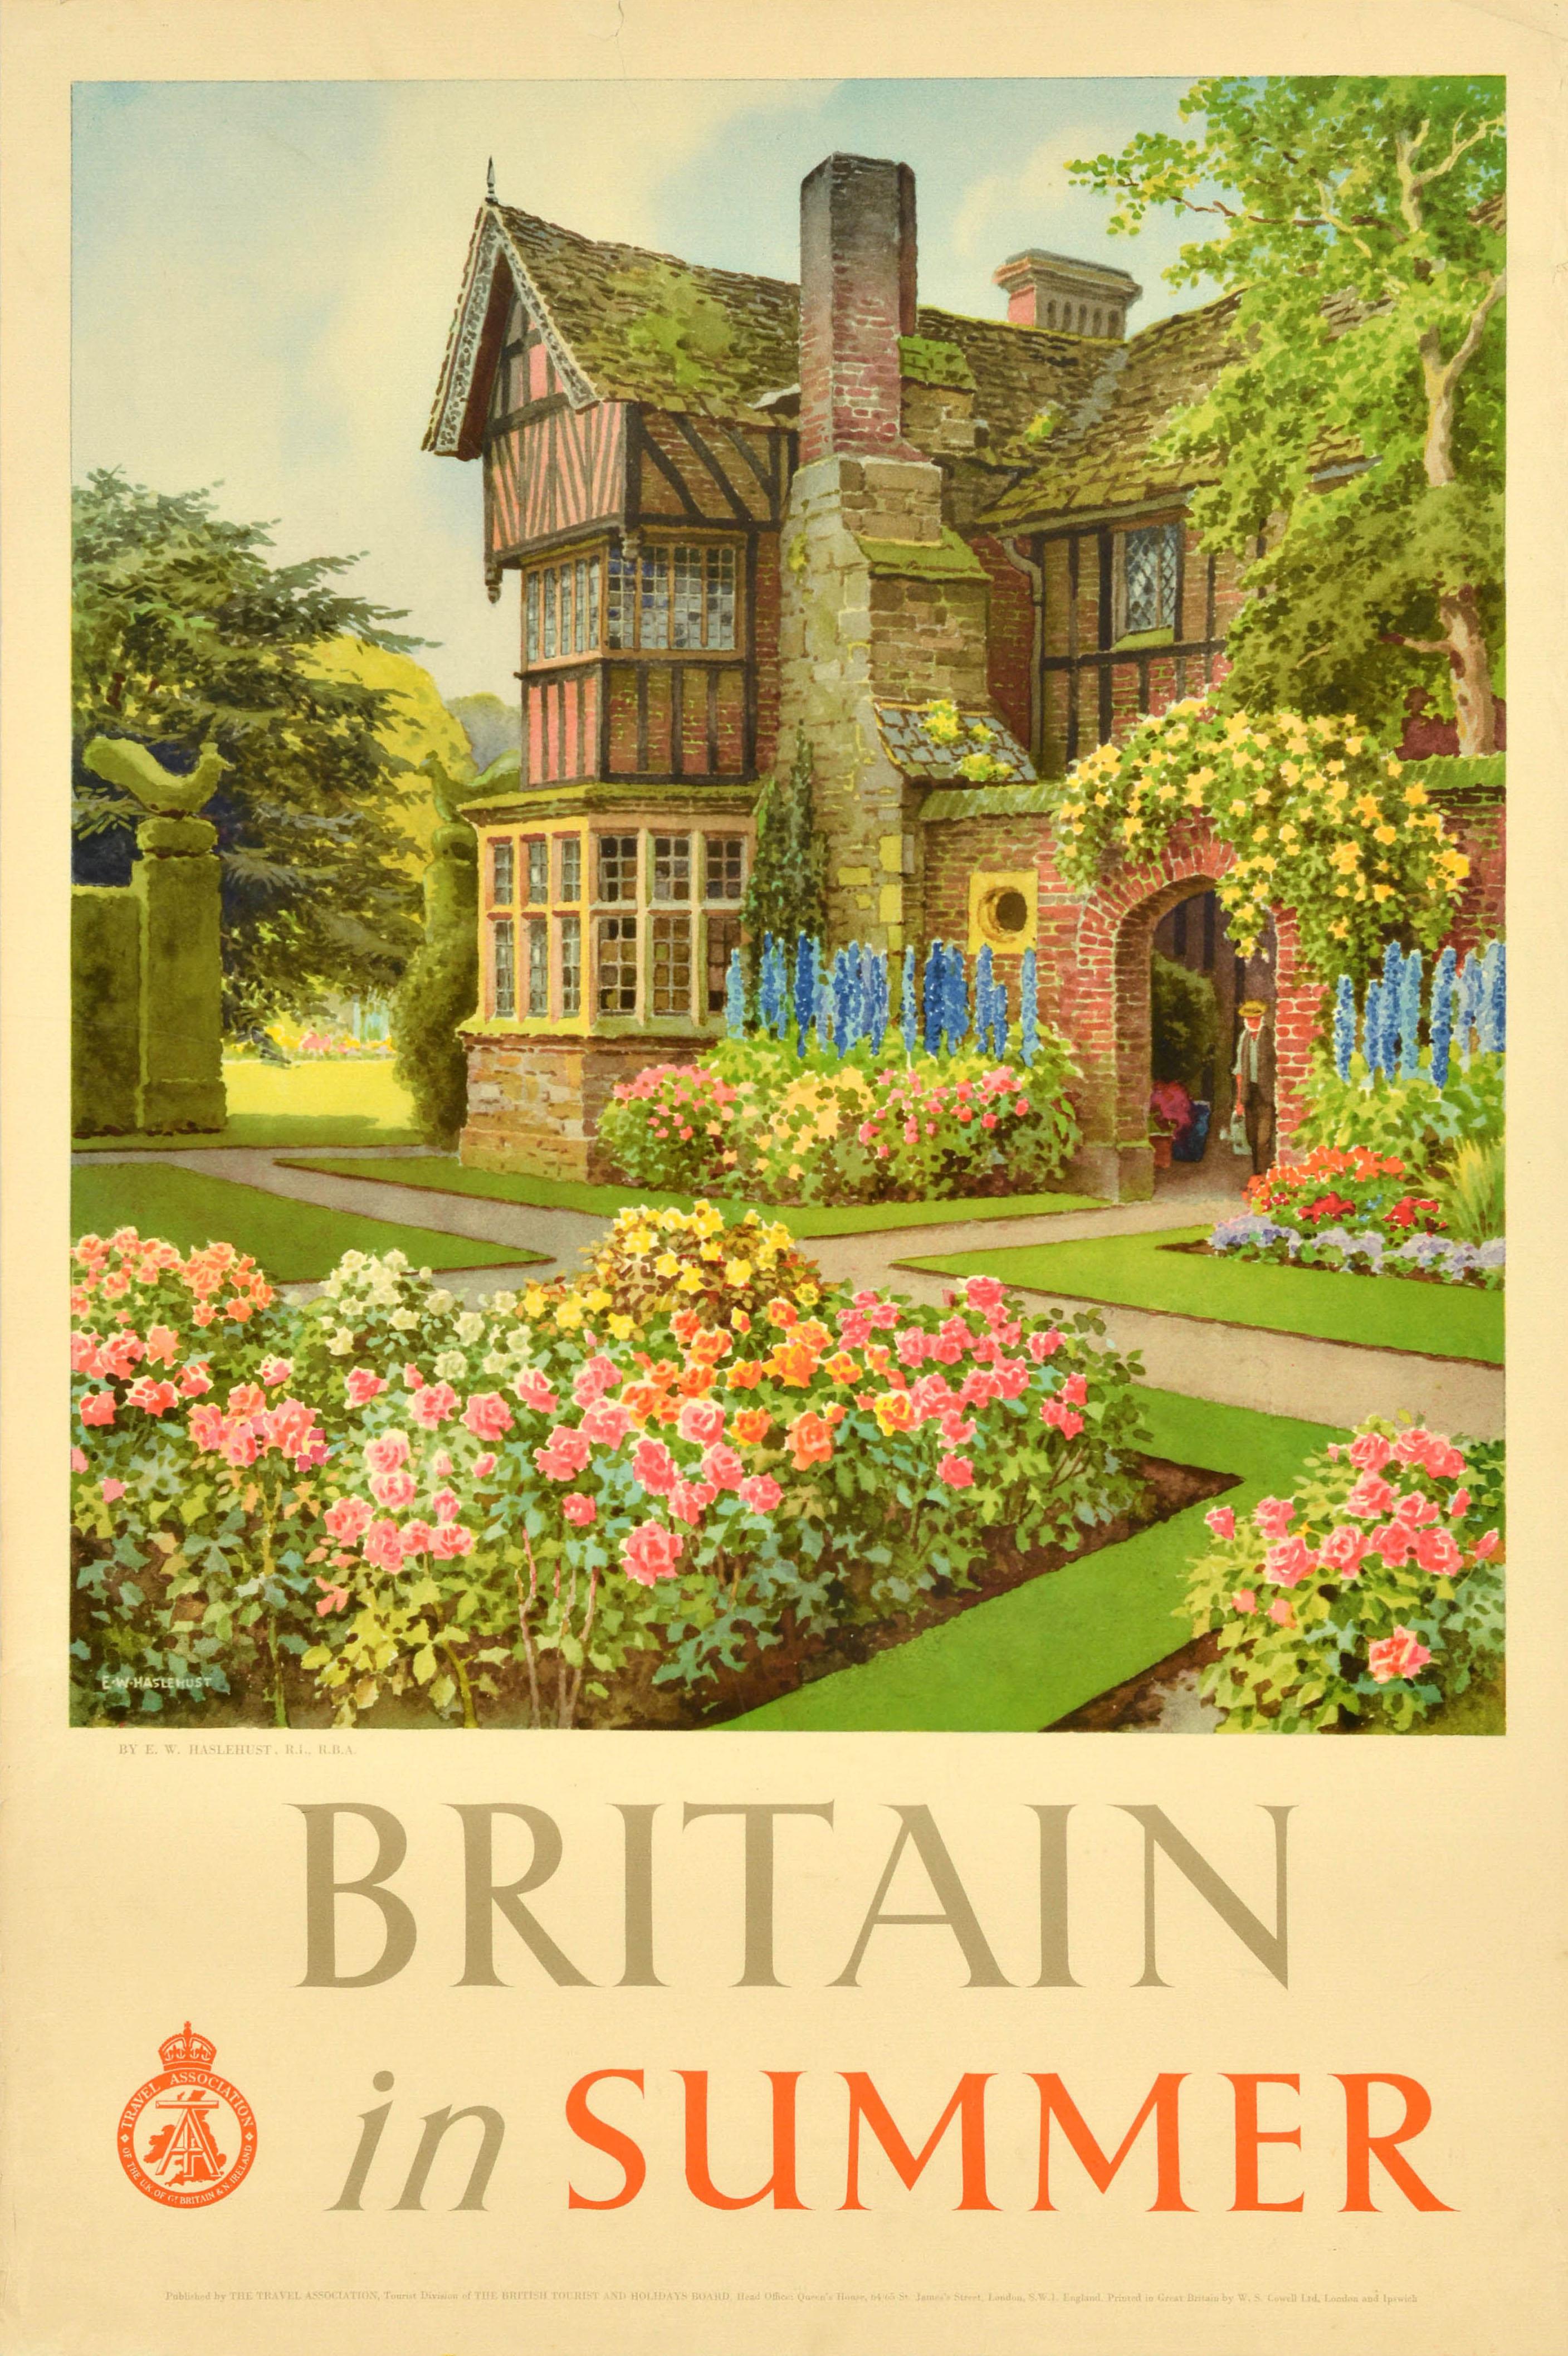 Ernest William Haslehust Print - Original Vintage Travel Poster Britain In Summer Manor Flower Garden Haslehust